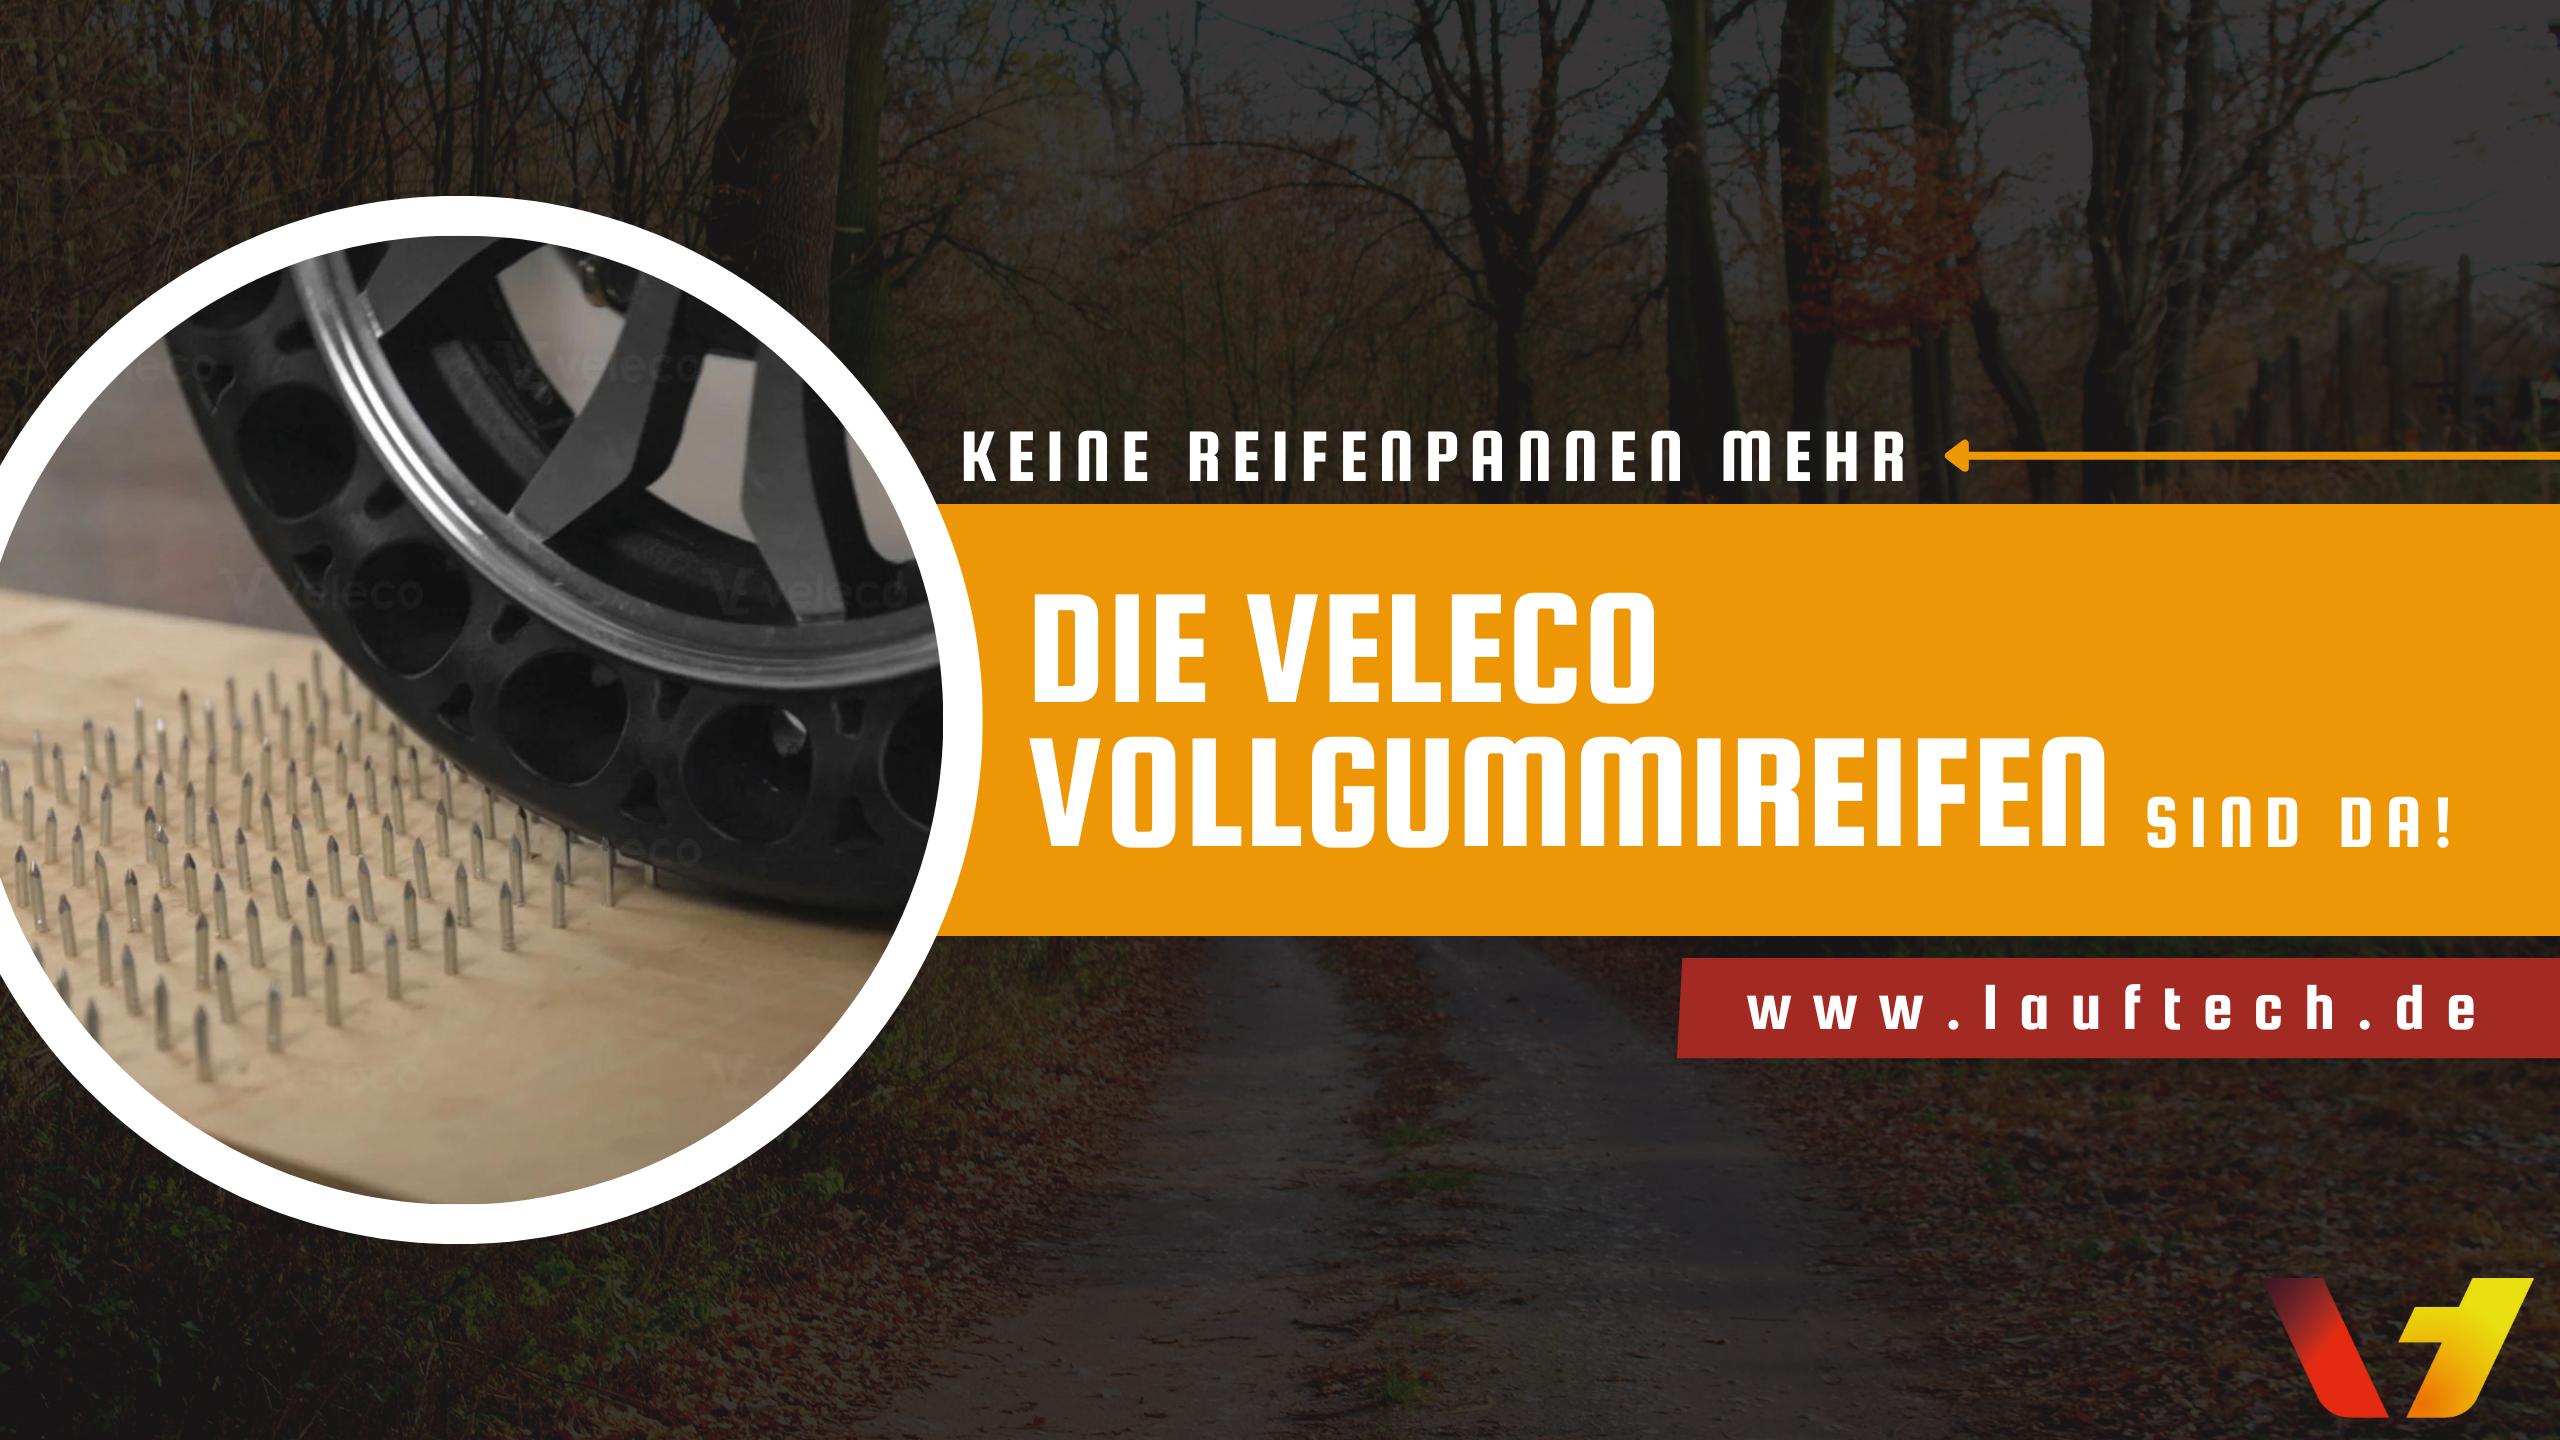 Lauftech - Vollgummireifen für Veleco-Mobilitätsroller und alle ähnlich konstruierten Roller